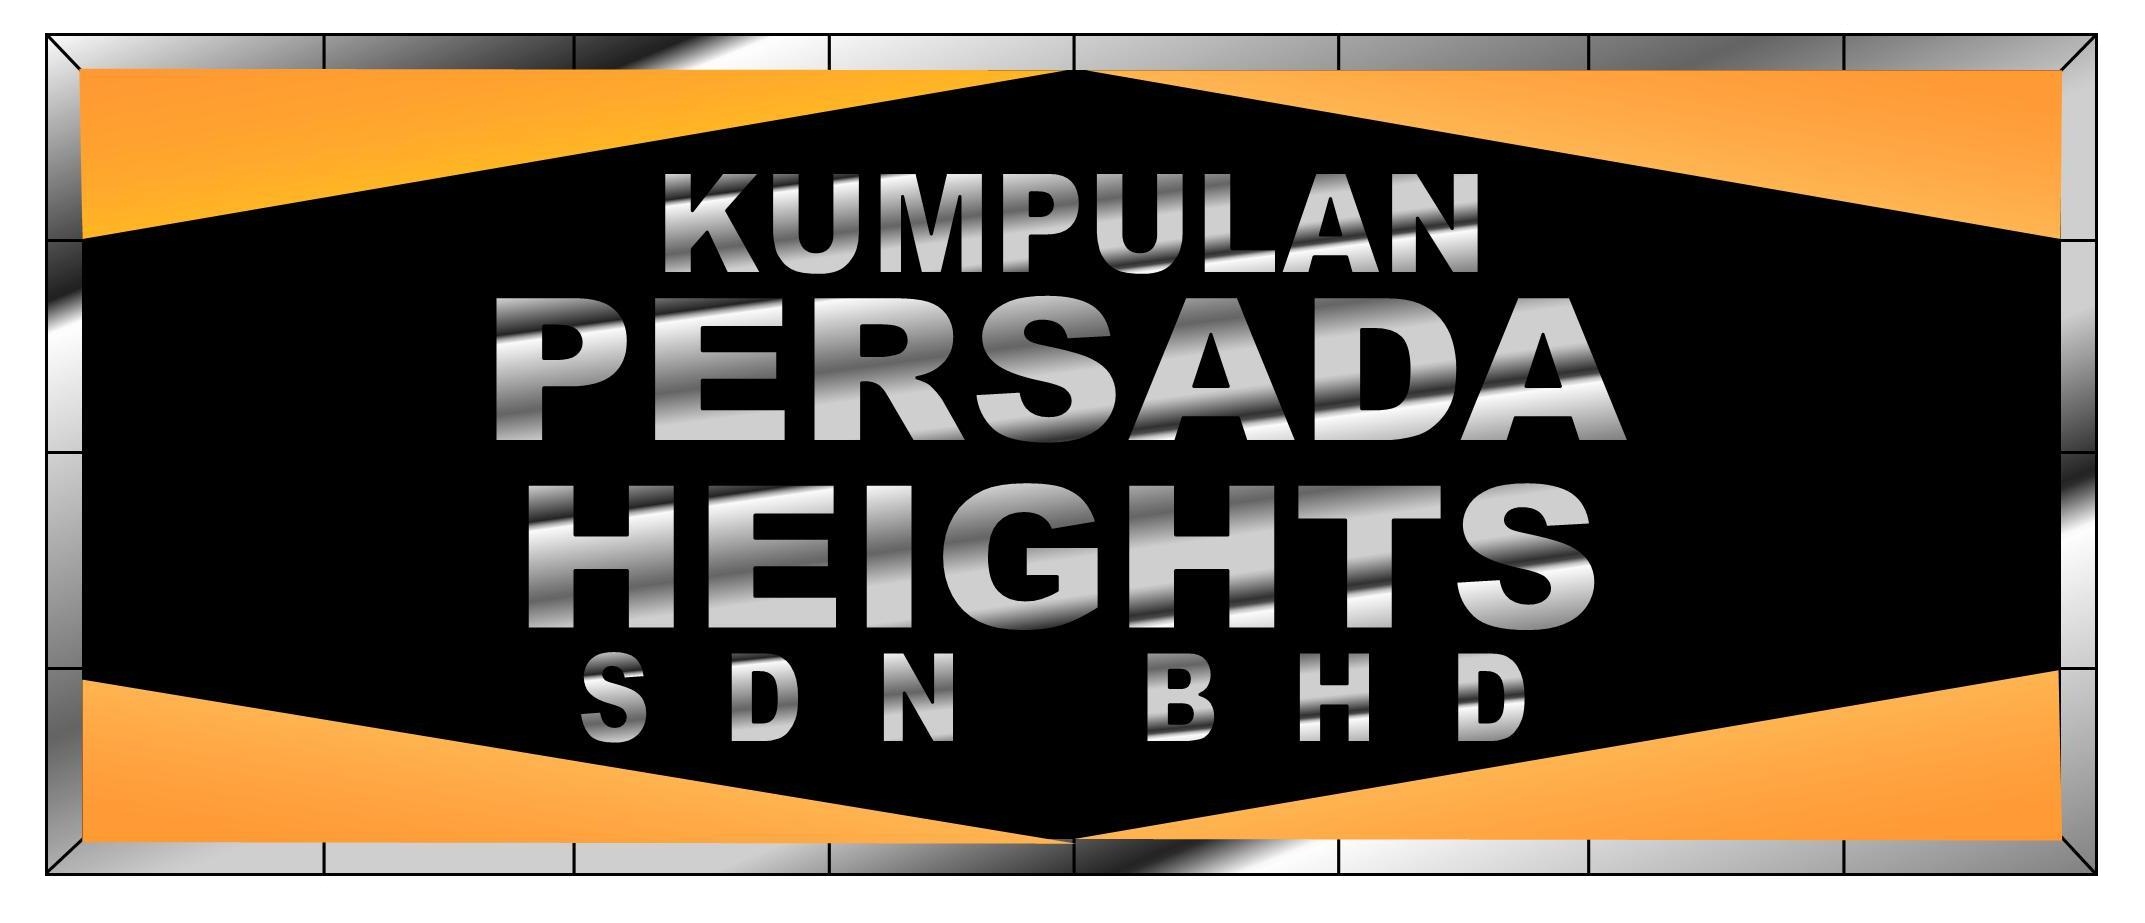 Kumpulan Persada Heights Sdn Bhd